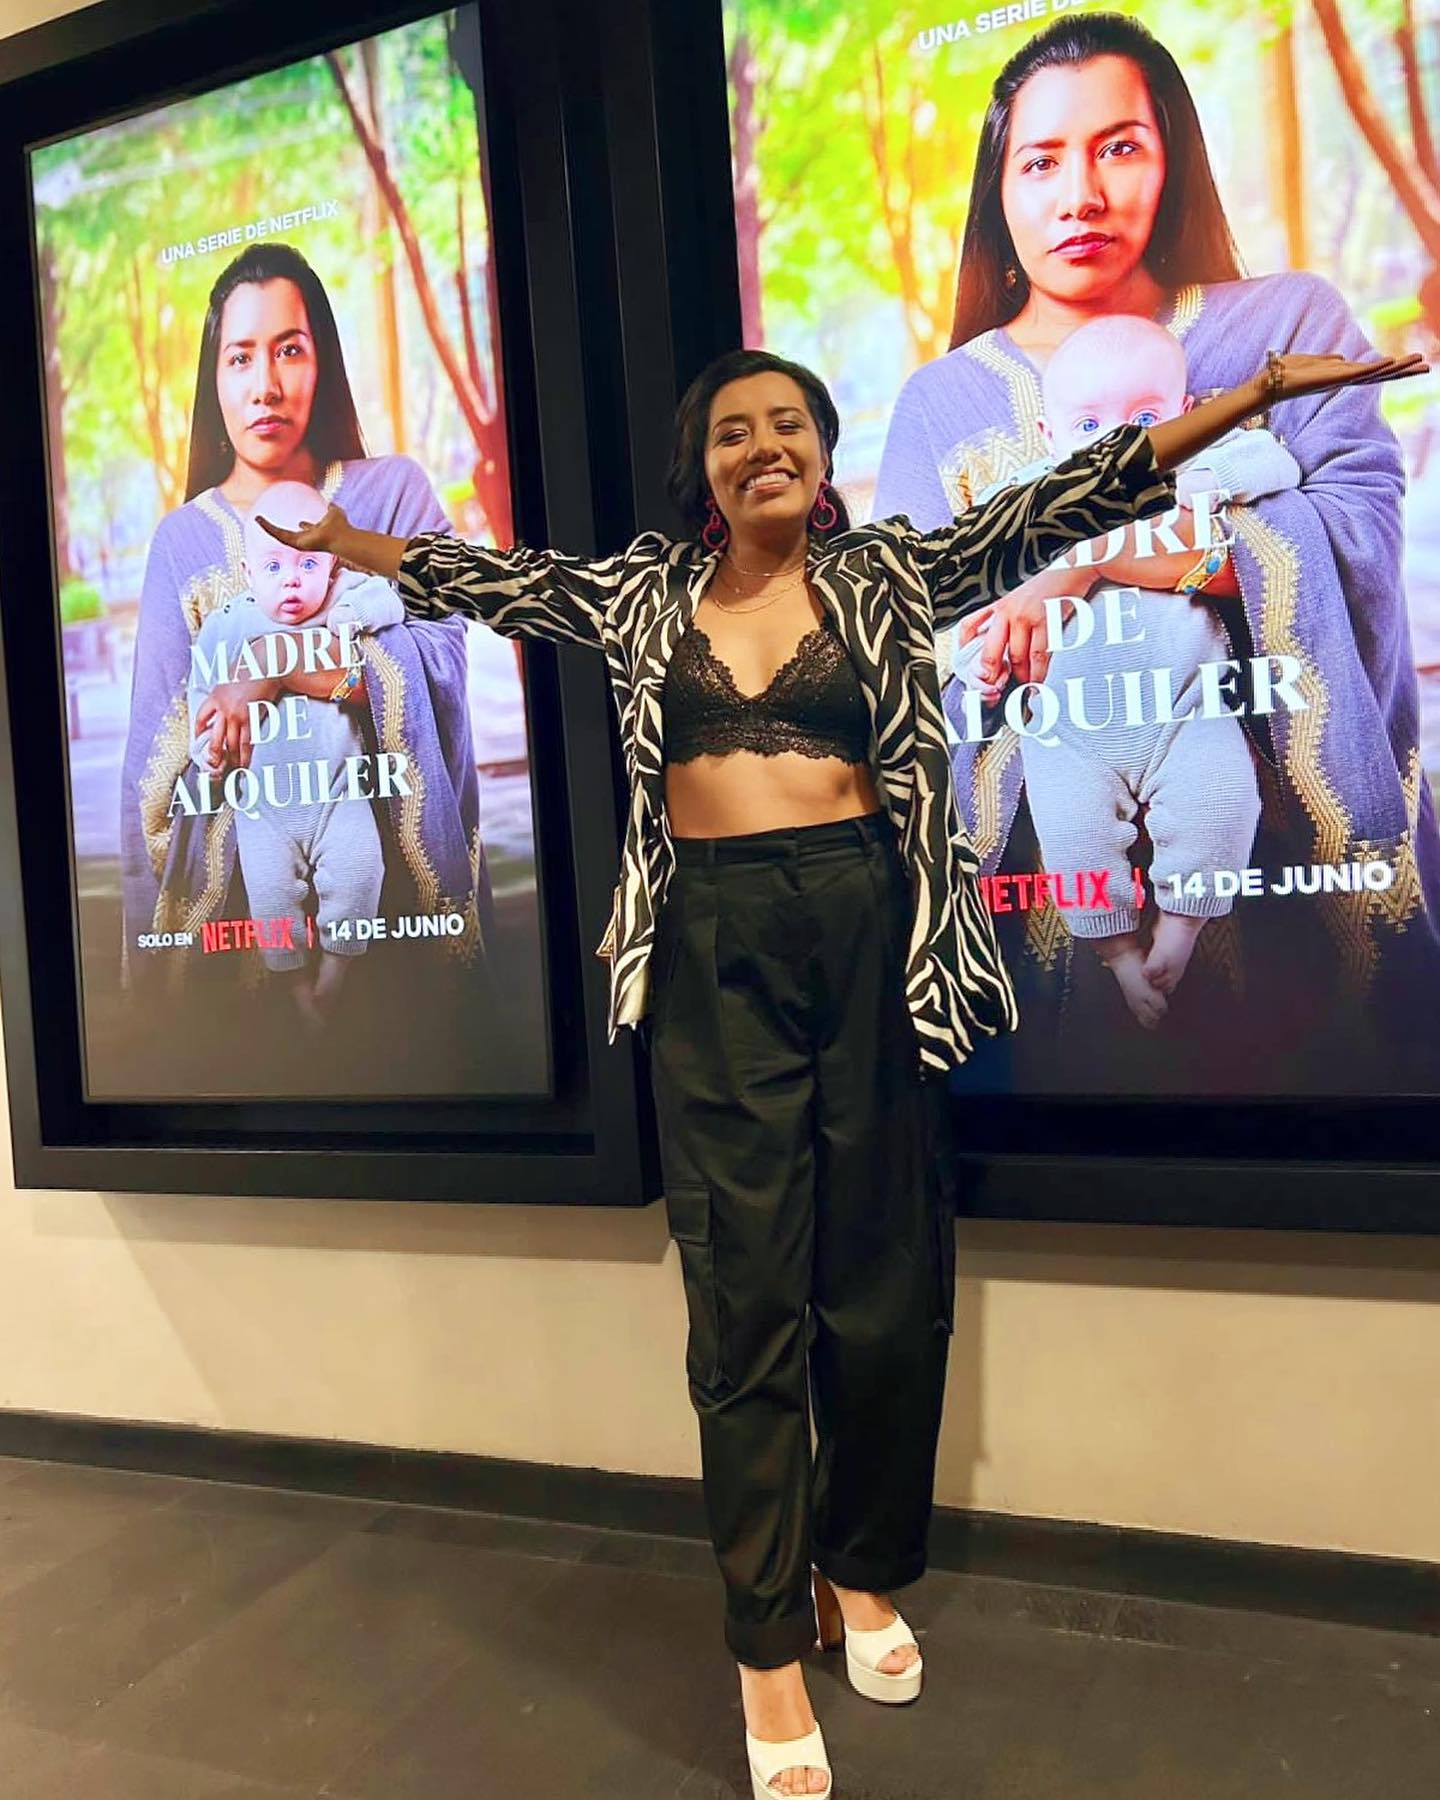 La actriz xalapeña Shaní Lozano promociona “Madre de alquiler” de Netflix